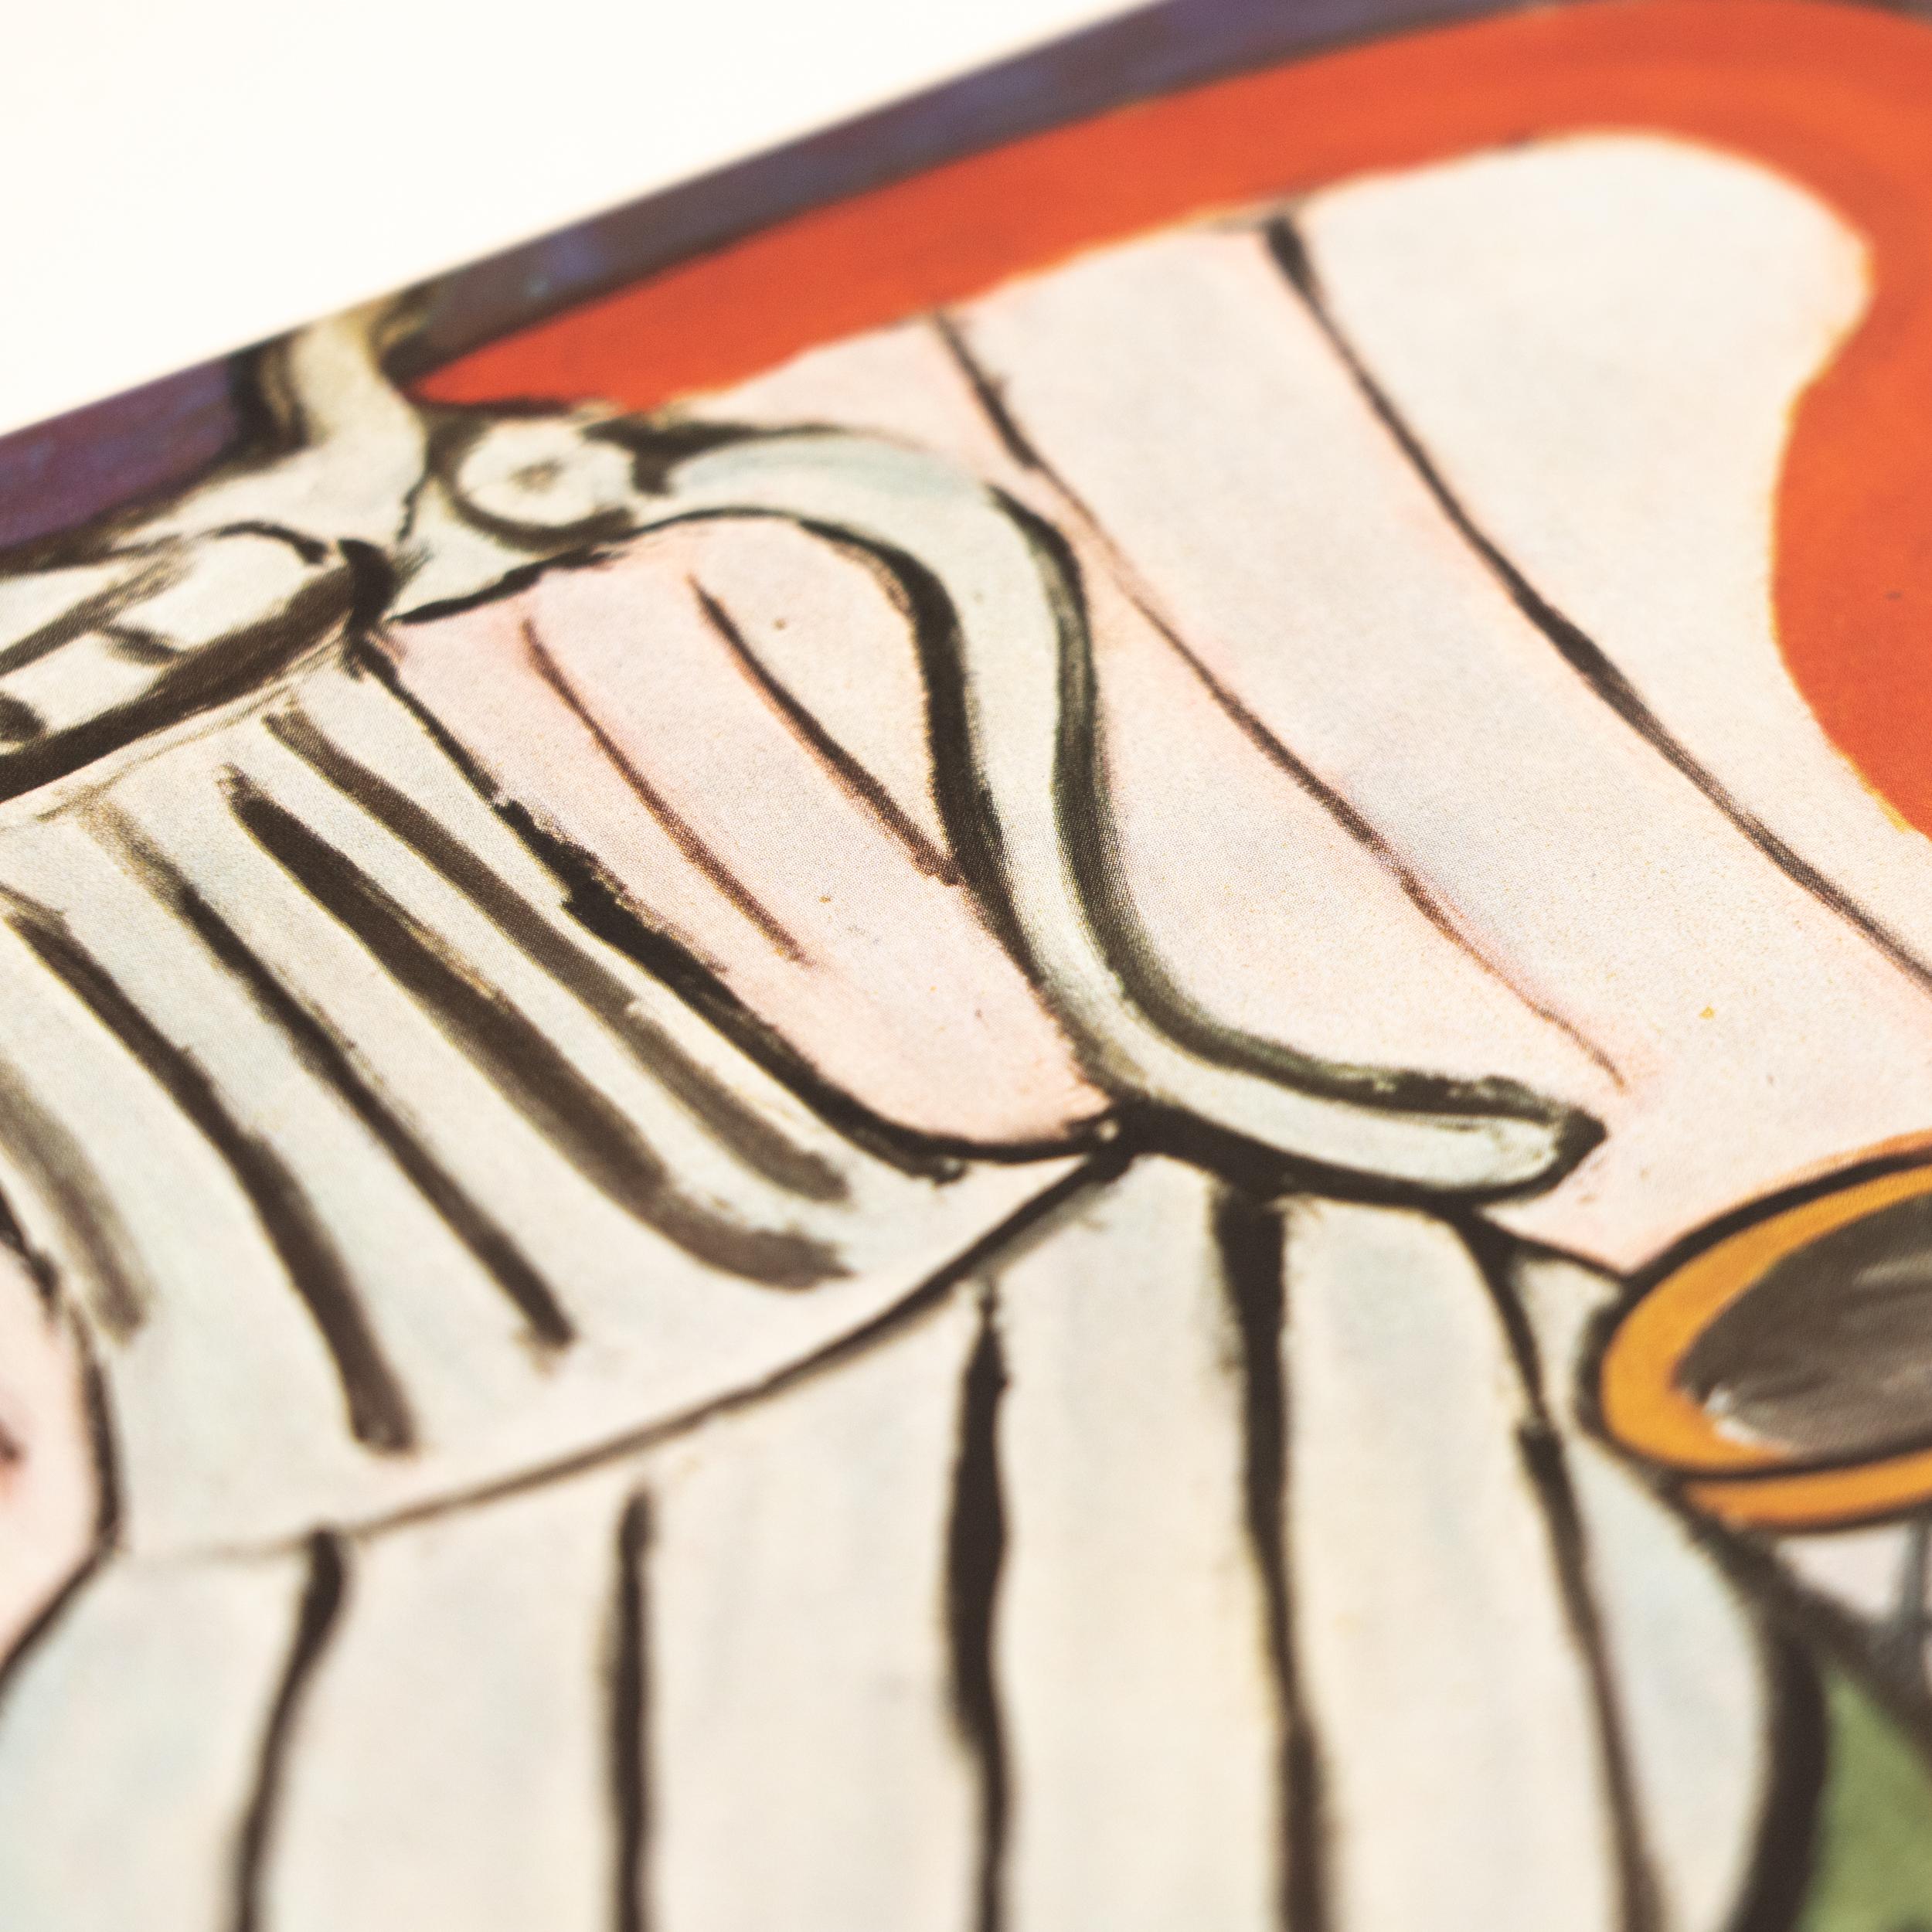 Rare Color Lithograph: A Glimpse into Matisse's Artistic Mastery For Sale 2